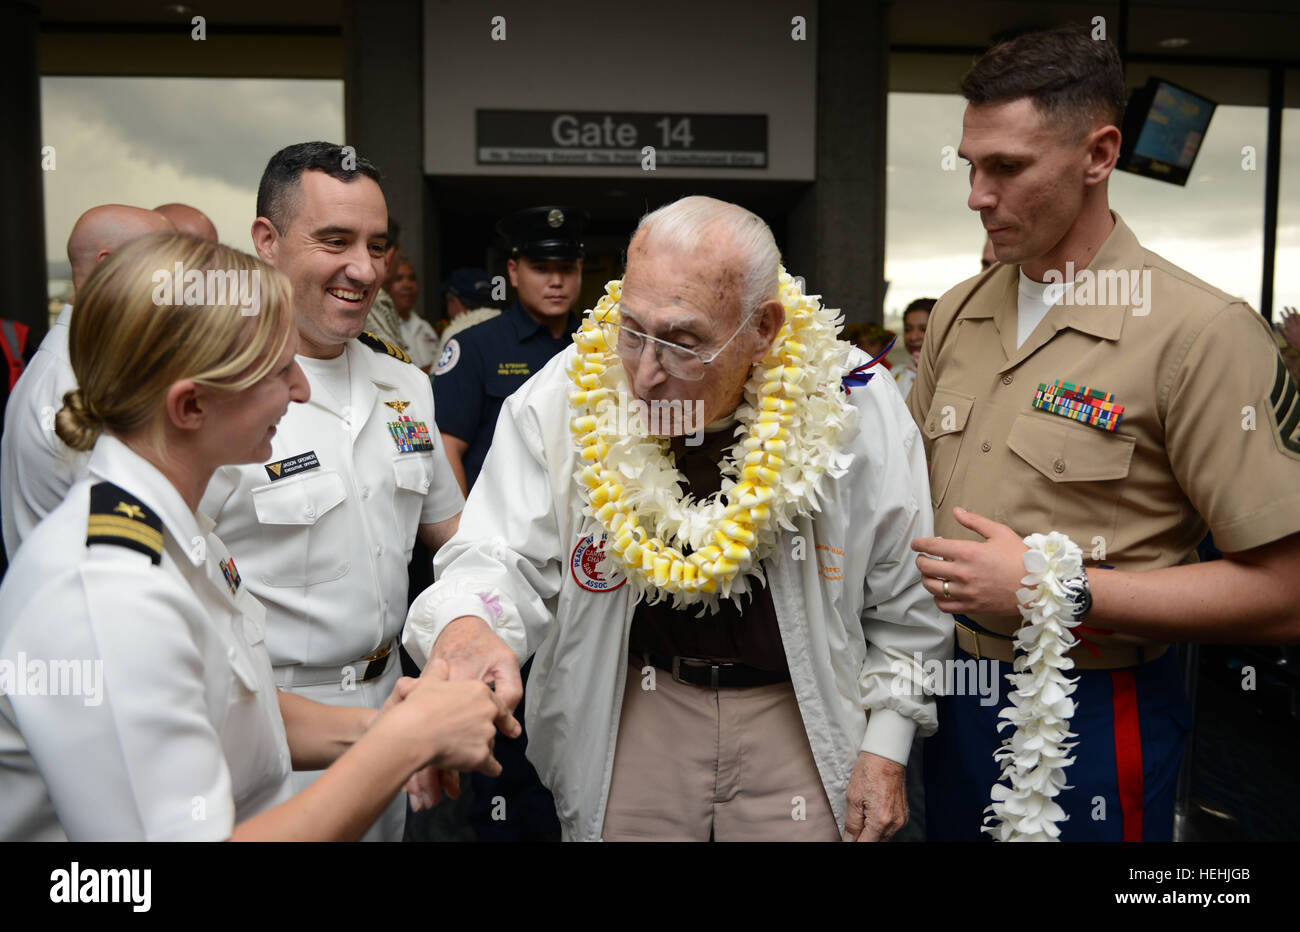 Eine Veteran des zweiten Weltkriegs Pearl Harbor USA wird von US-Soldaten mit floralen Leis begrüßt, nach der Ankunft am internationalen Flughafen Honolulu zur Teilnahme an Veranstaltungen zum Gedenken zu Ehren des 75-jährigen Bestehens des Pearl Harbor Angriffen 3. Dezember 2016 in Honolulu, Hawaii. Stockfoto